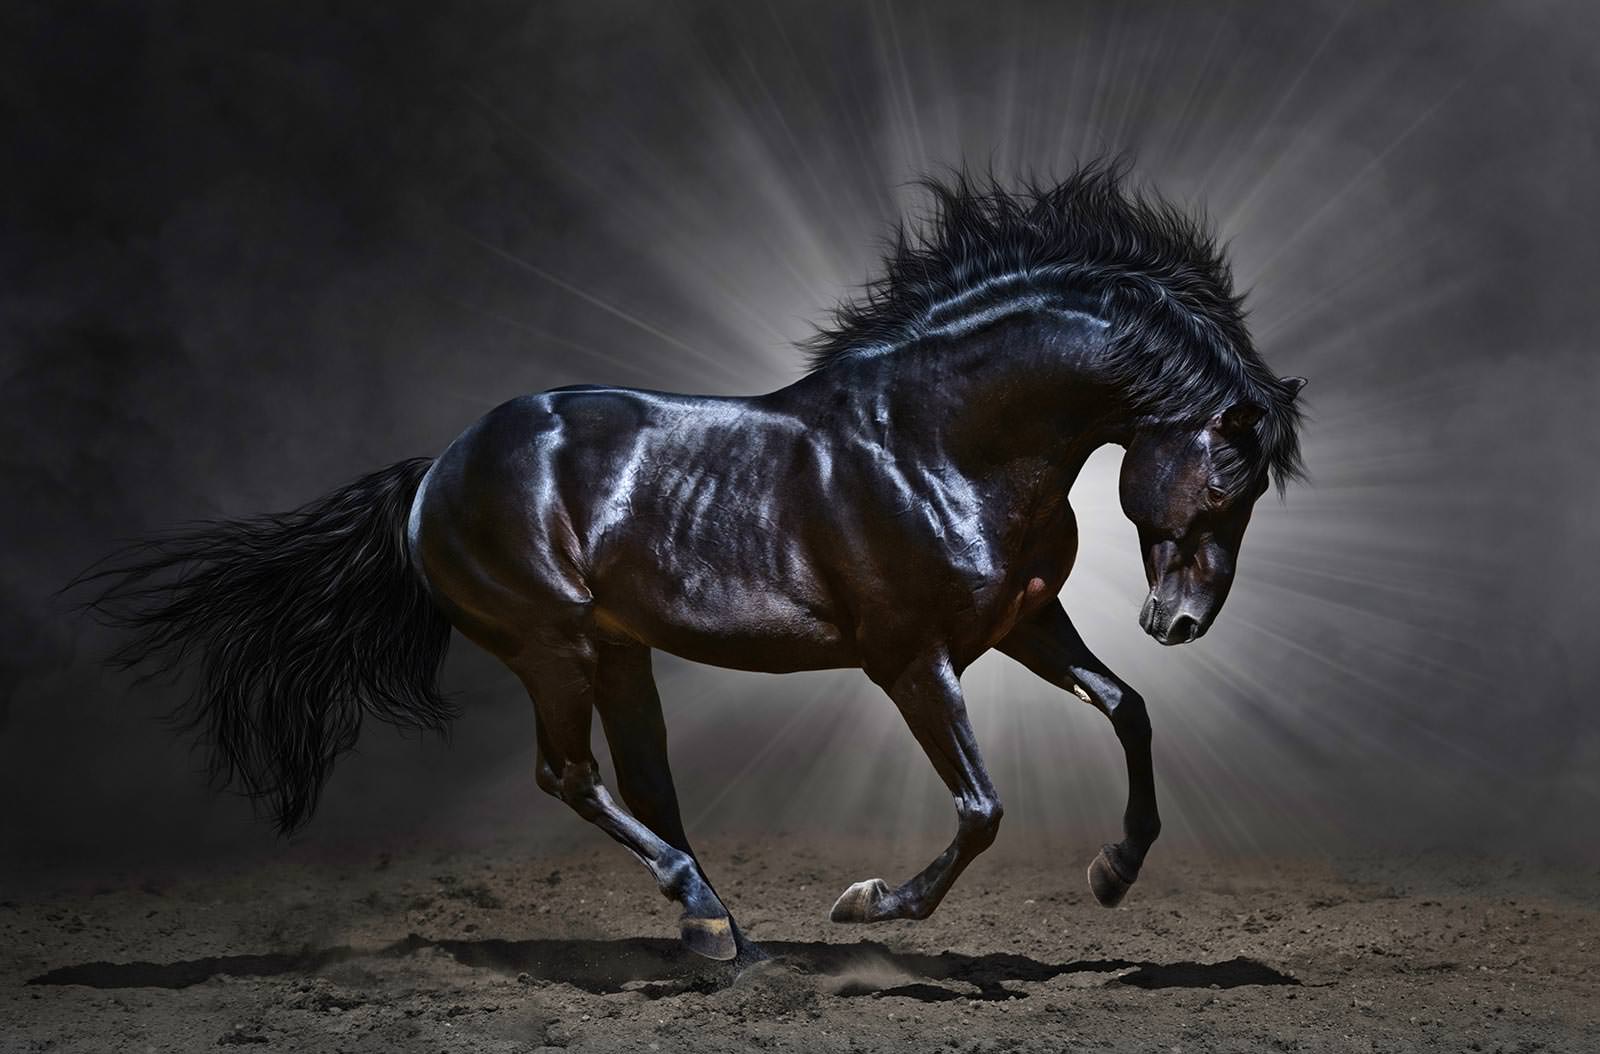 Вороной конь - Фотообои на заказ в интернет магазин arte.ru. Заказать обои  Вороной конь Арт - (16334)